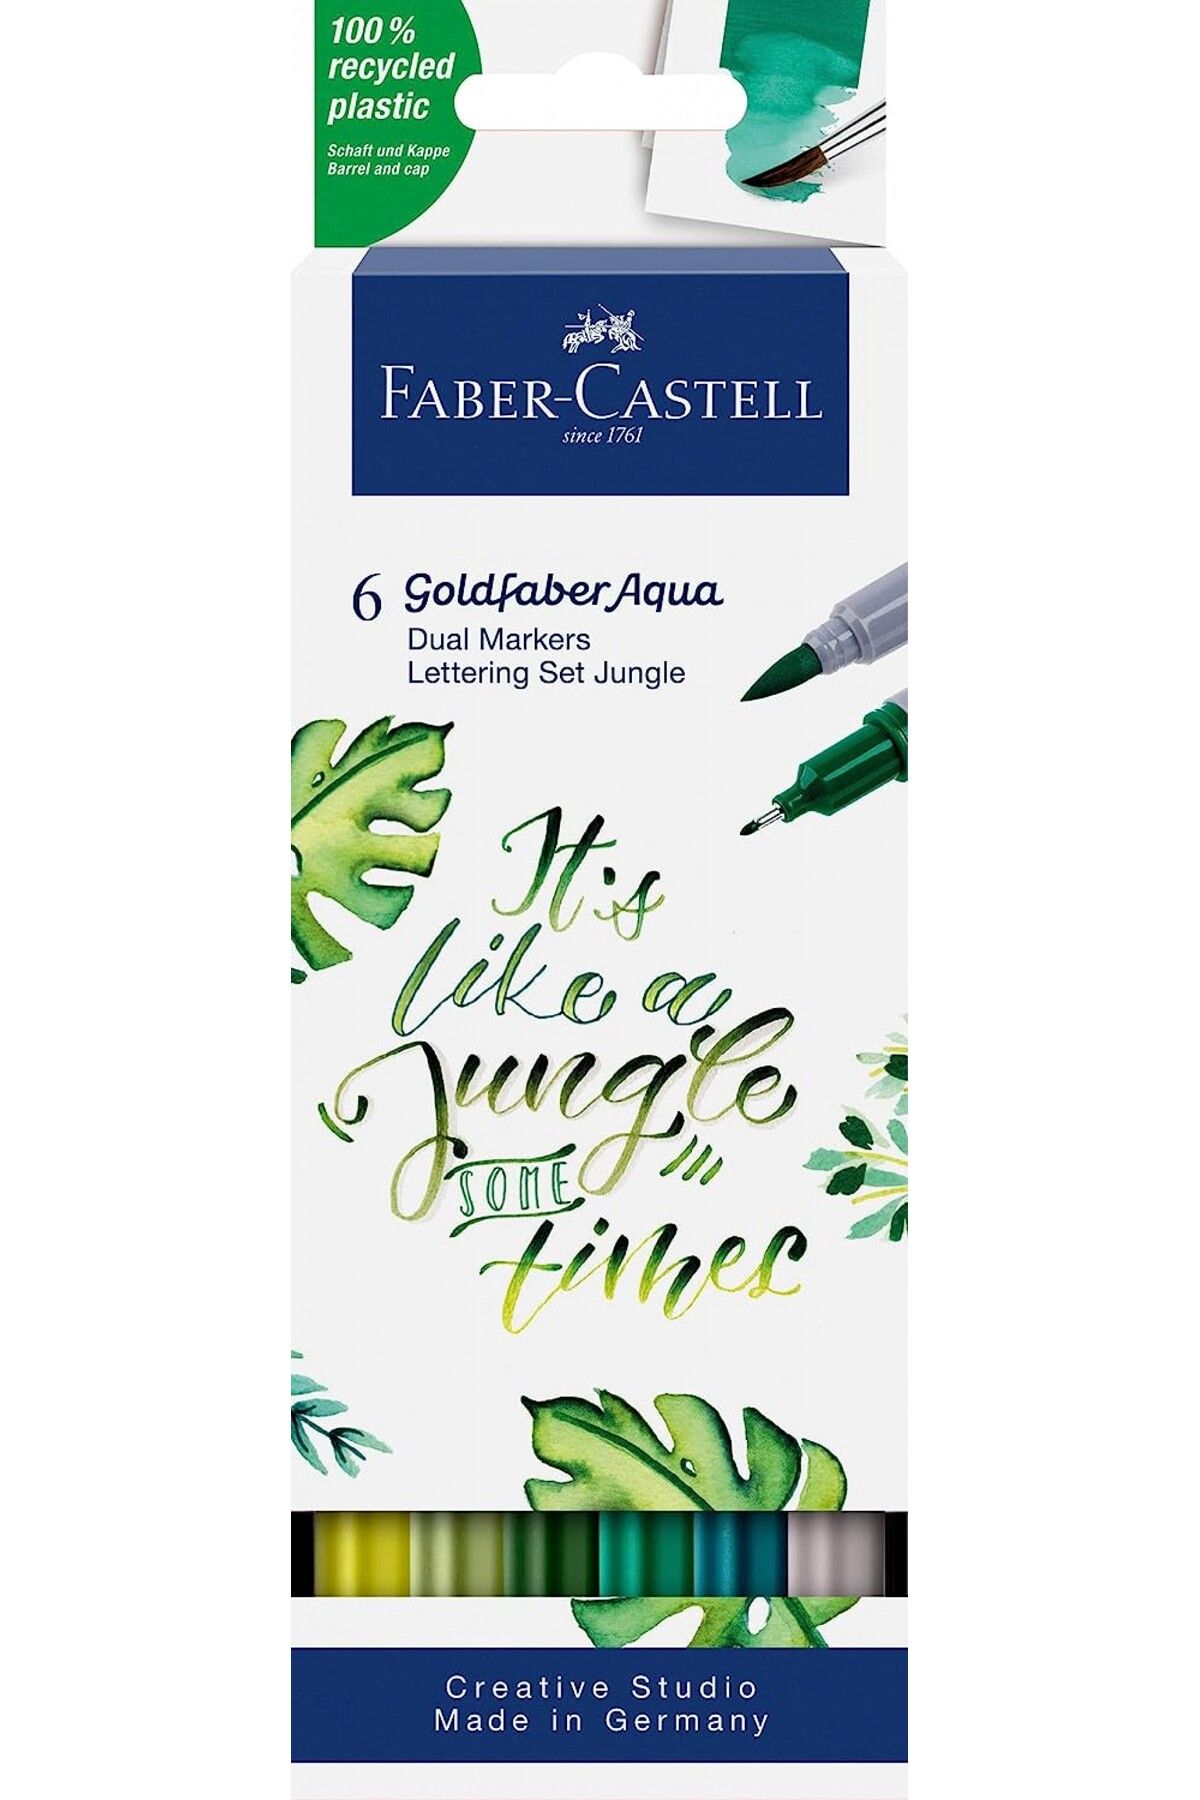 Faber Castell Faber-castell Goldfaber Aqua Çift Uçlu Markör, Kaligrafi, 6‘lı Jungle / 164517